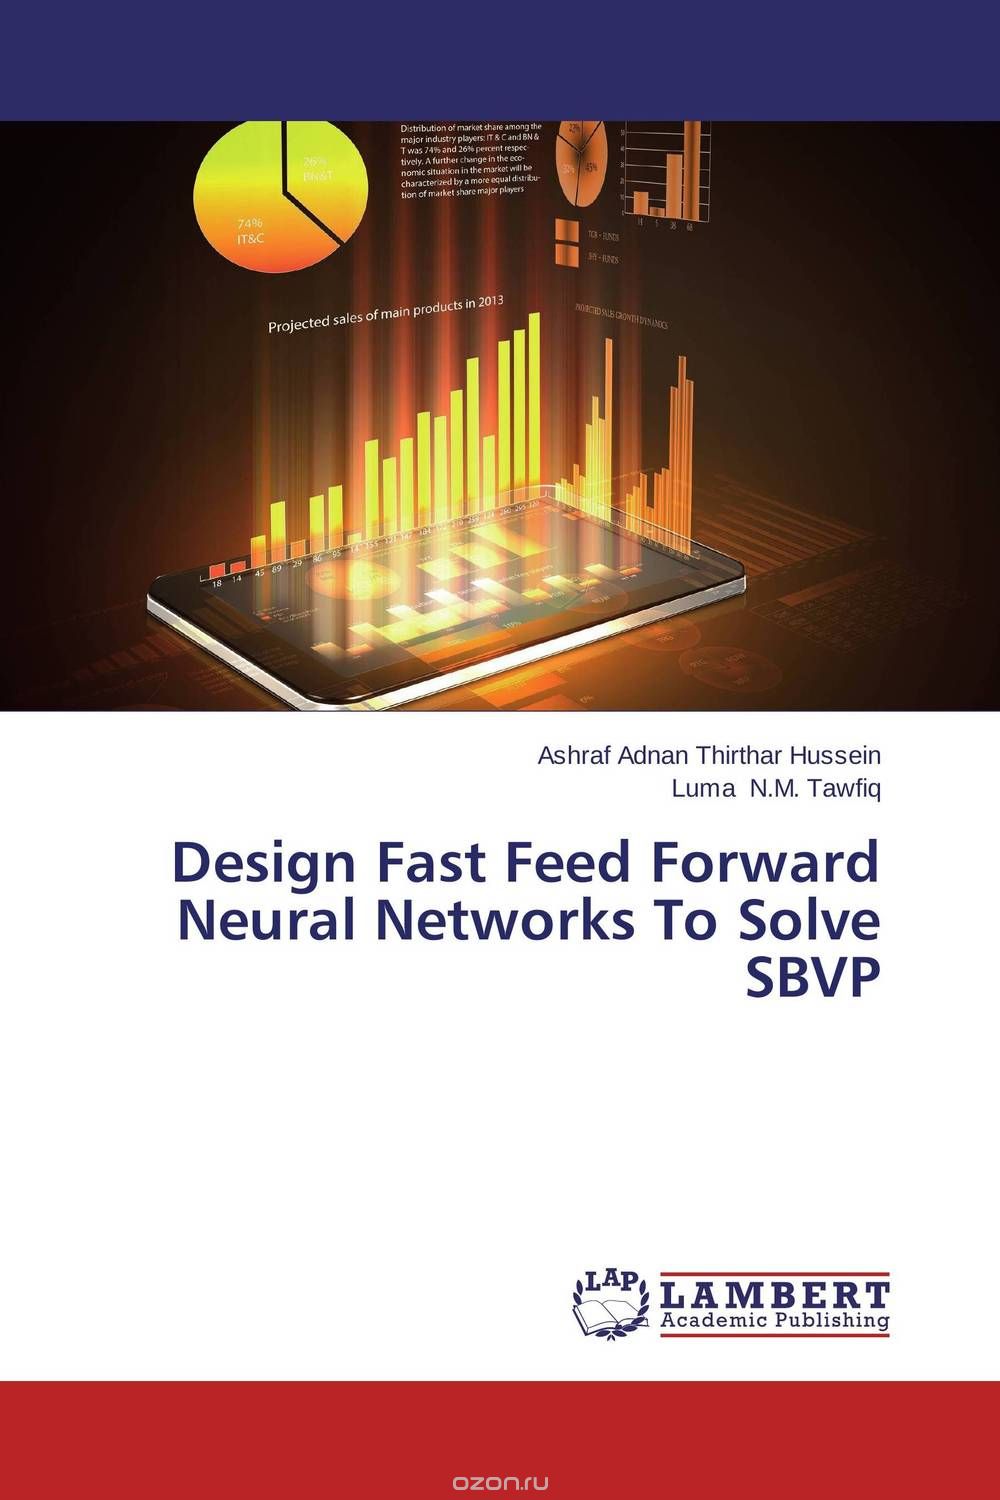 Скачать книгу "Design Fast Feed Forward Neural Networks To Solve SBVP"